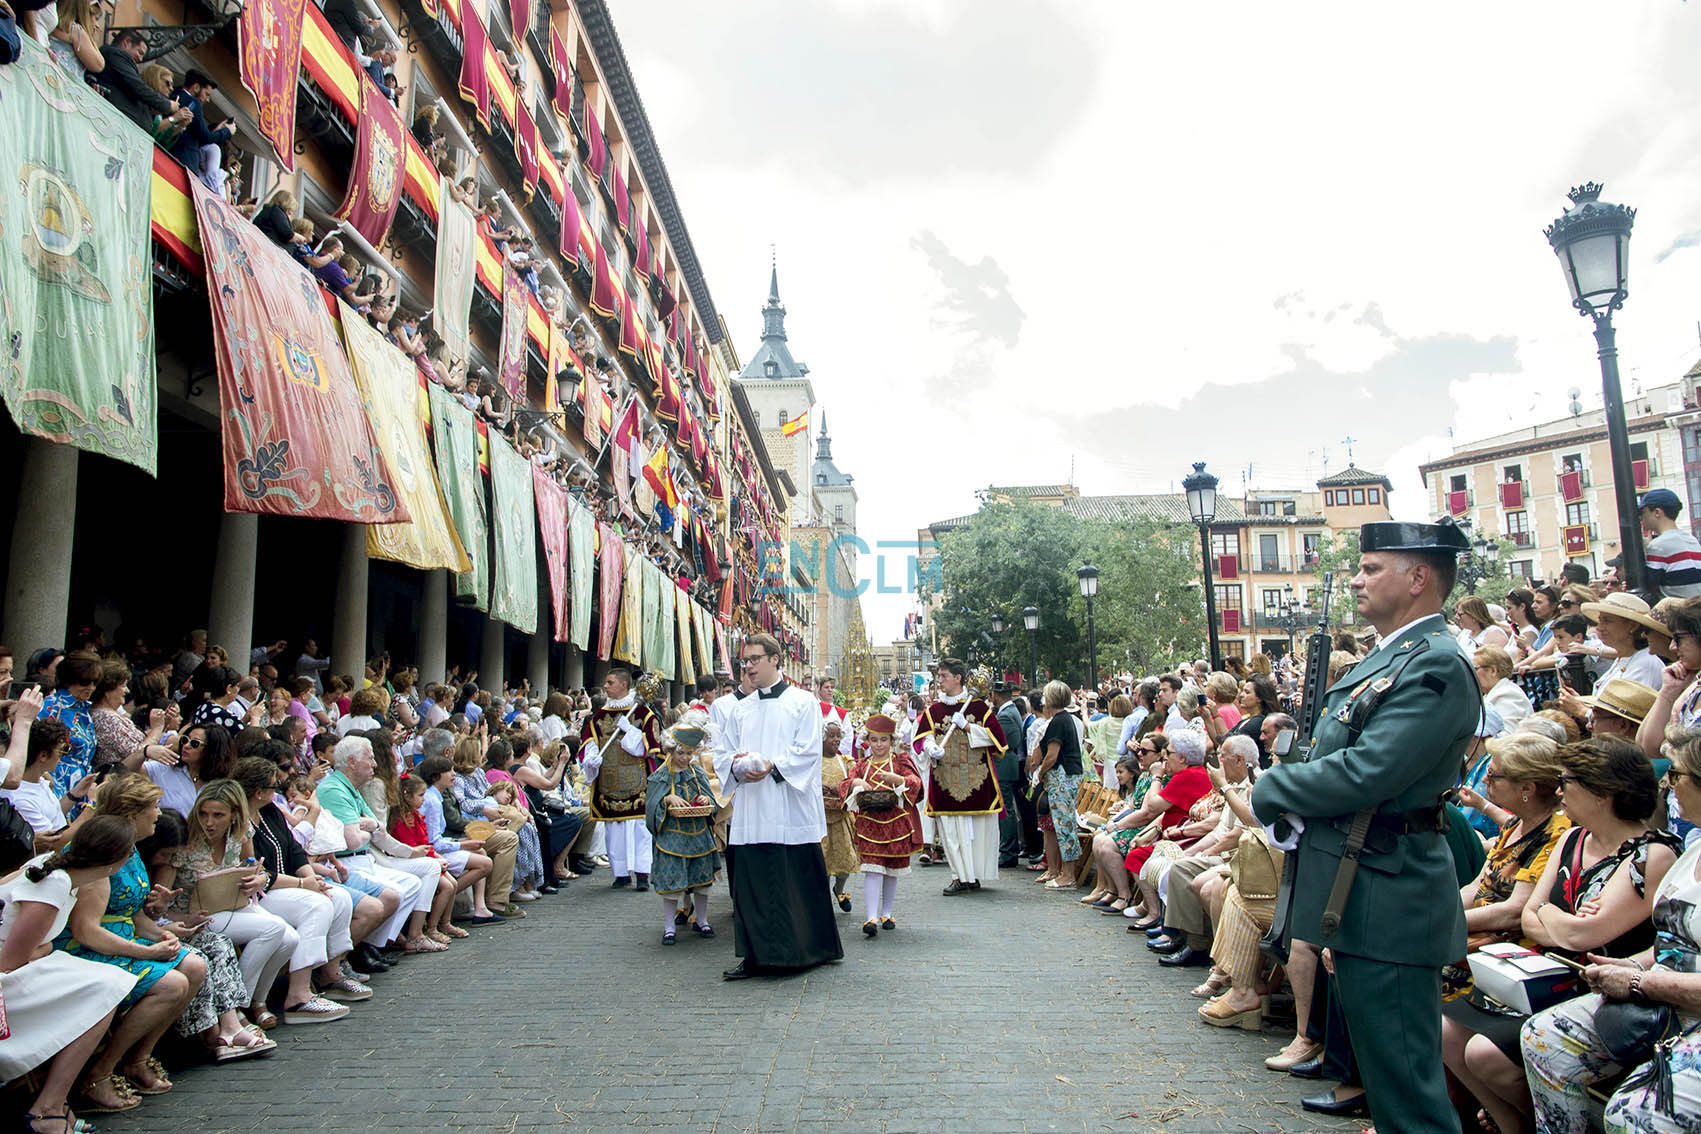 Las calles del casco histórico de Toledo estaba abarrotadas de gente durante la procesión.